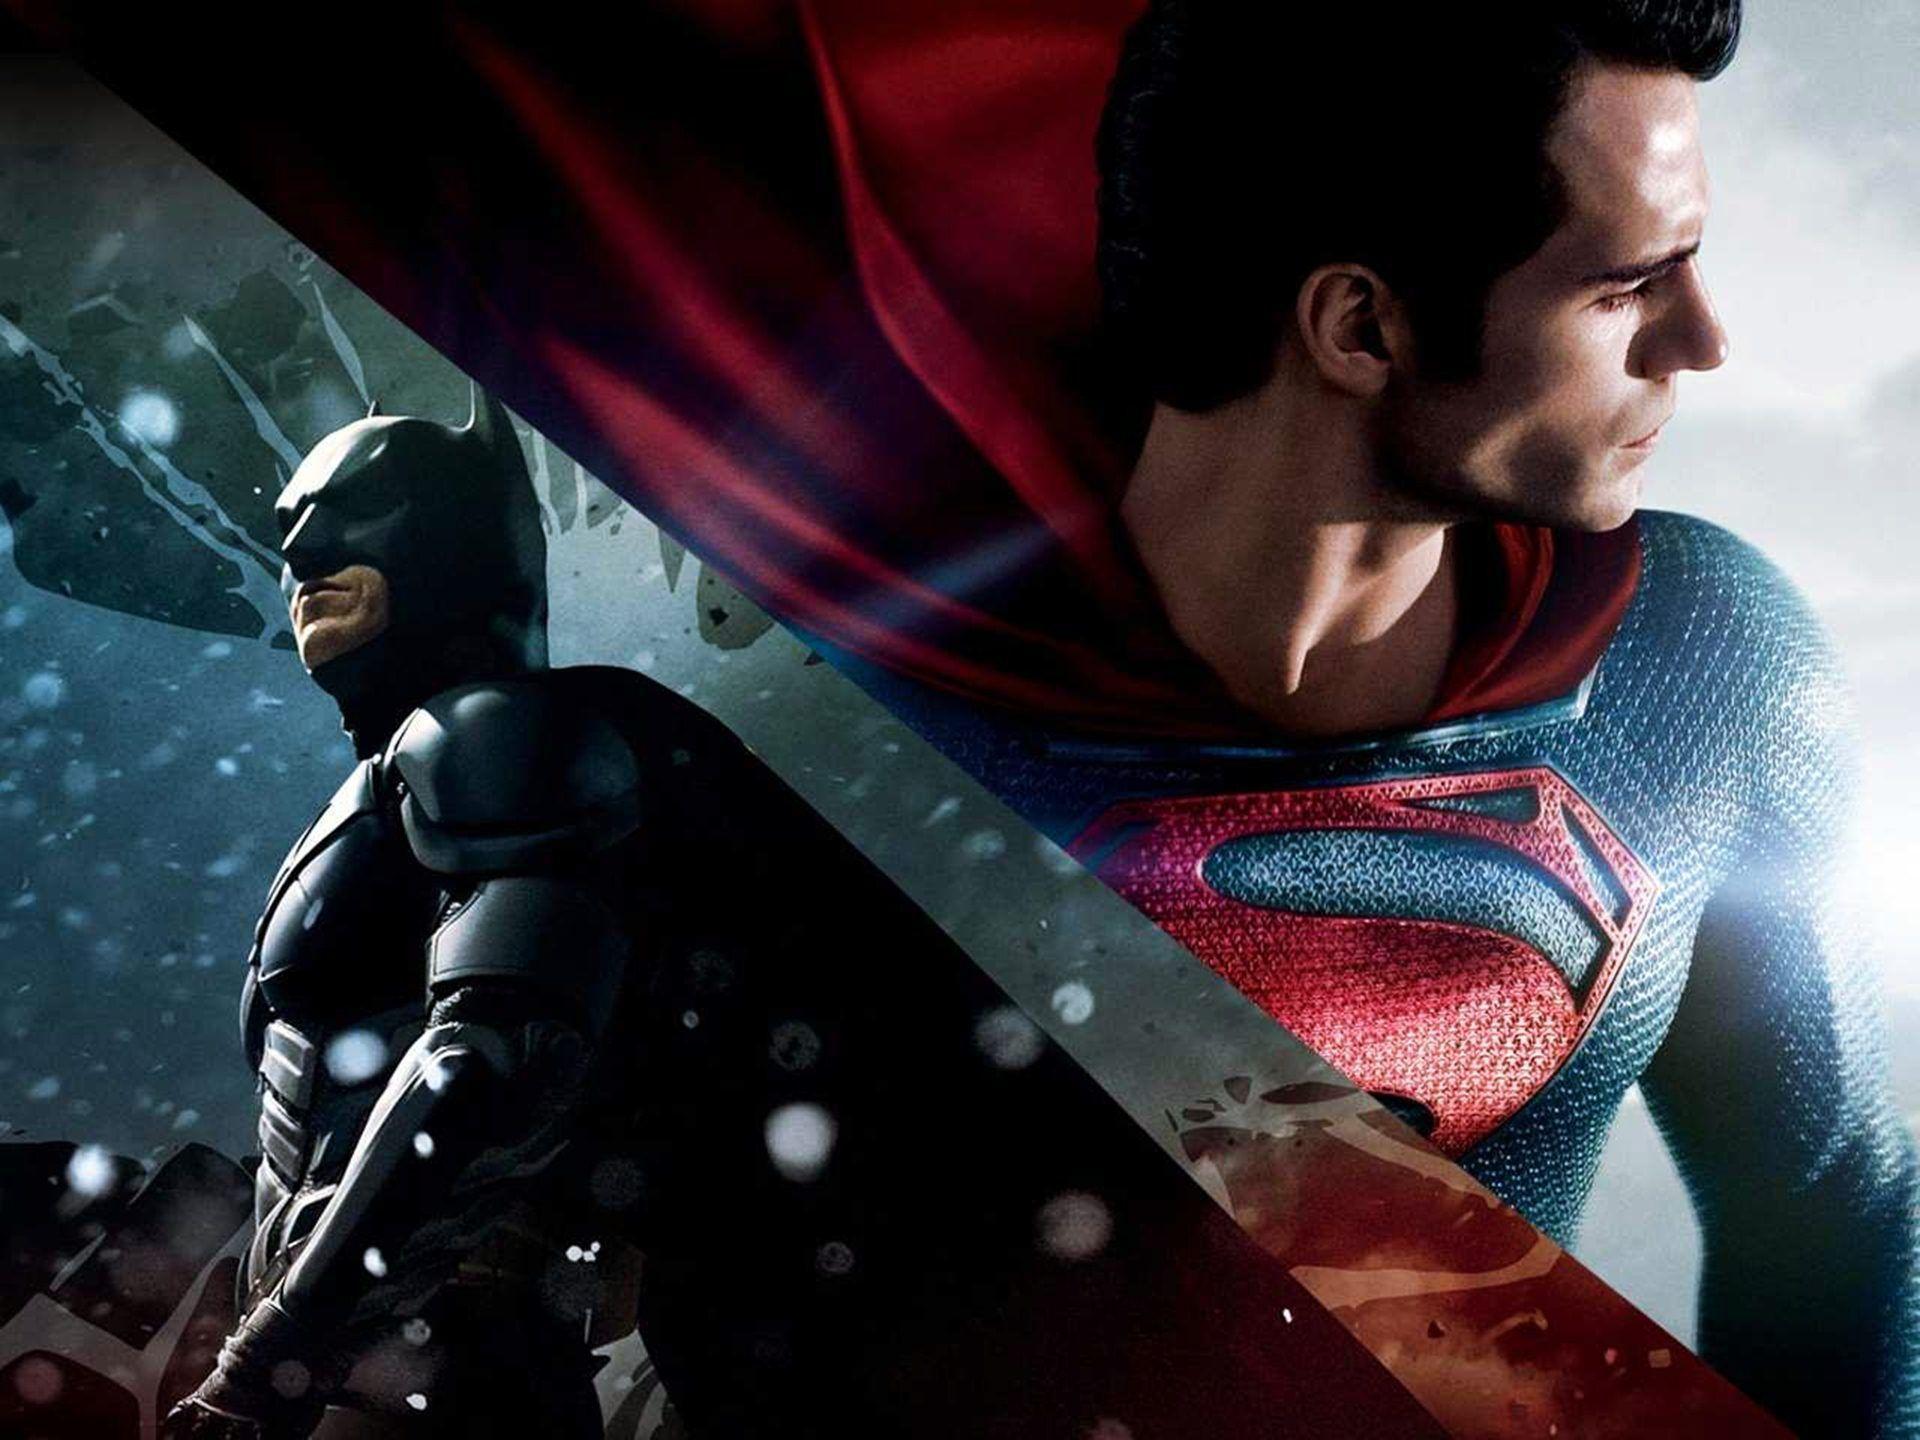 Batman V Superman 2015 Stills Wallpaper. Download High Quality